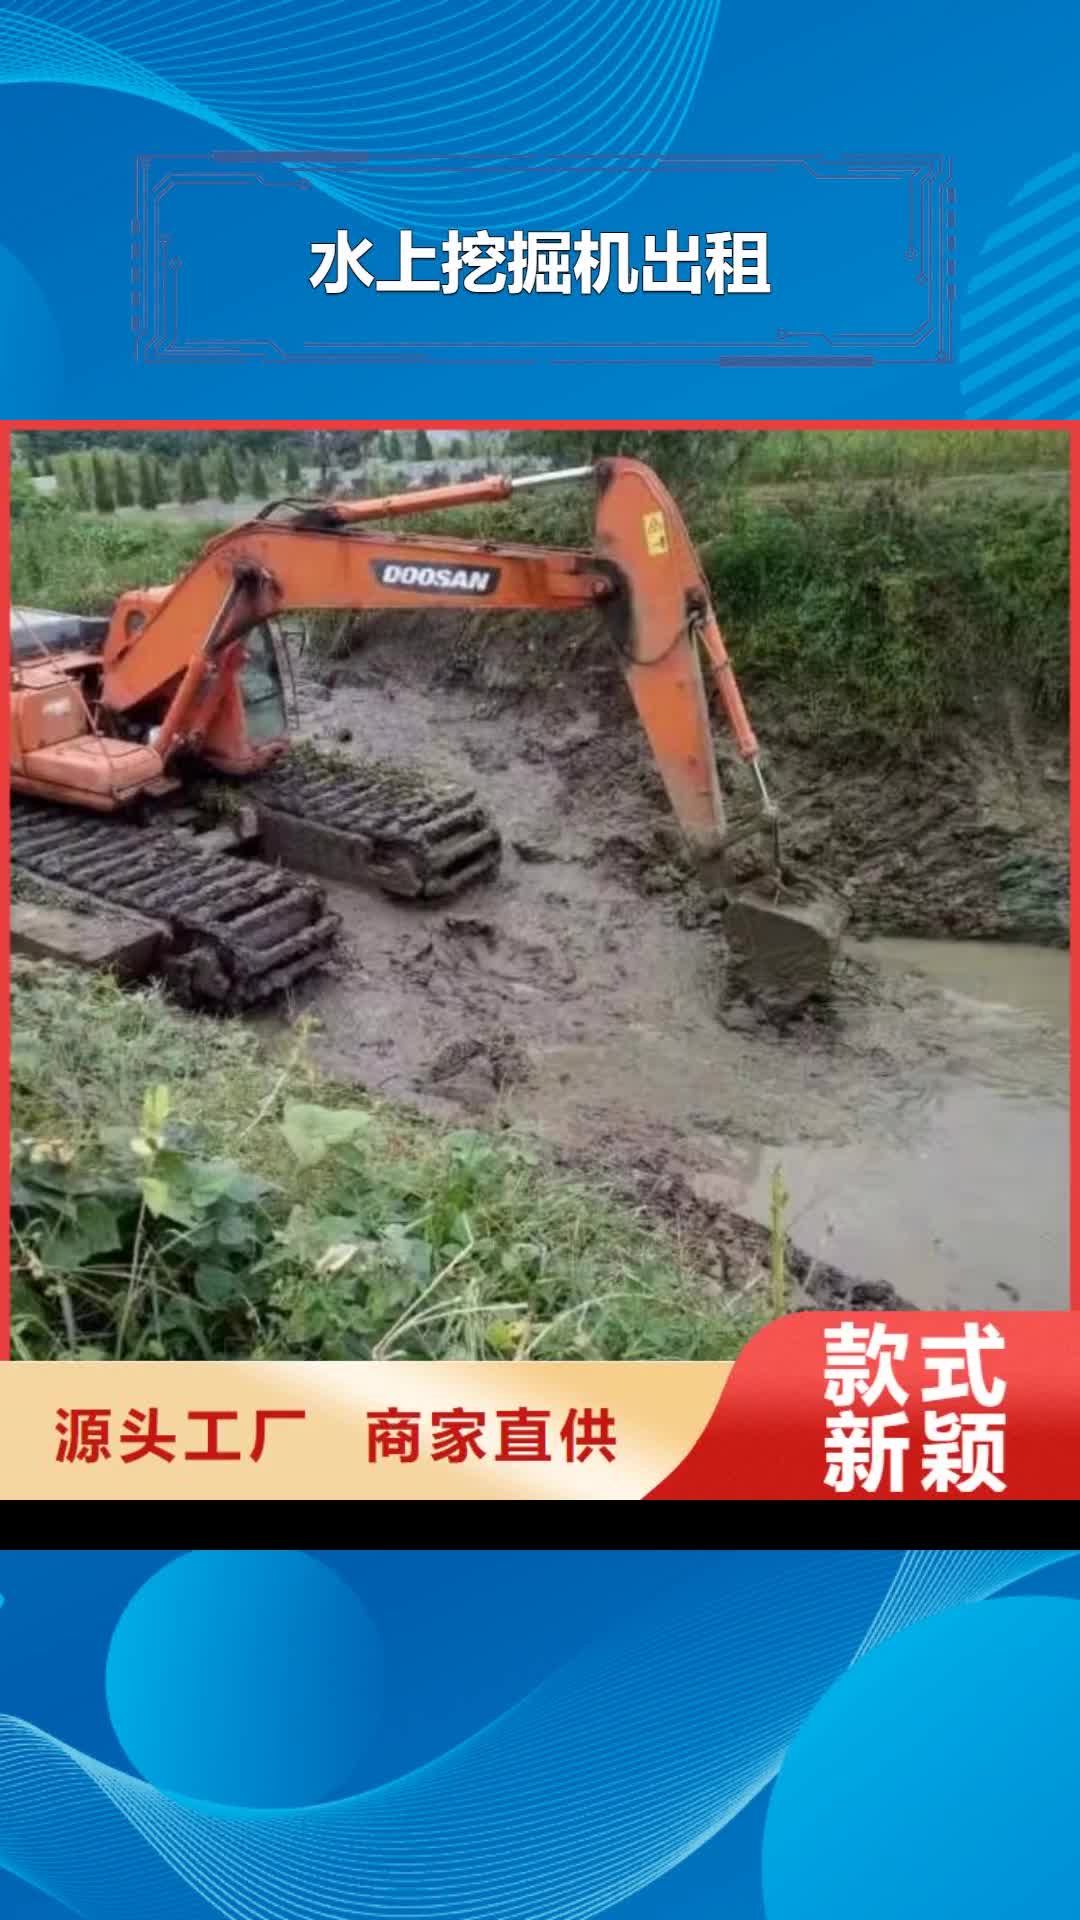 武汉 水上挖掘机出租 【水陆两用挖掘机租赁】厂家货源